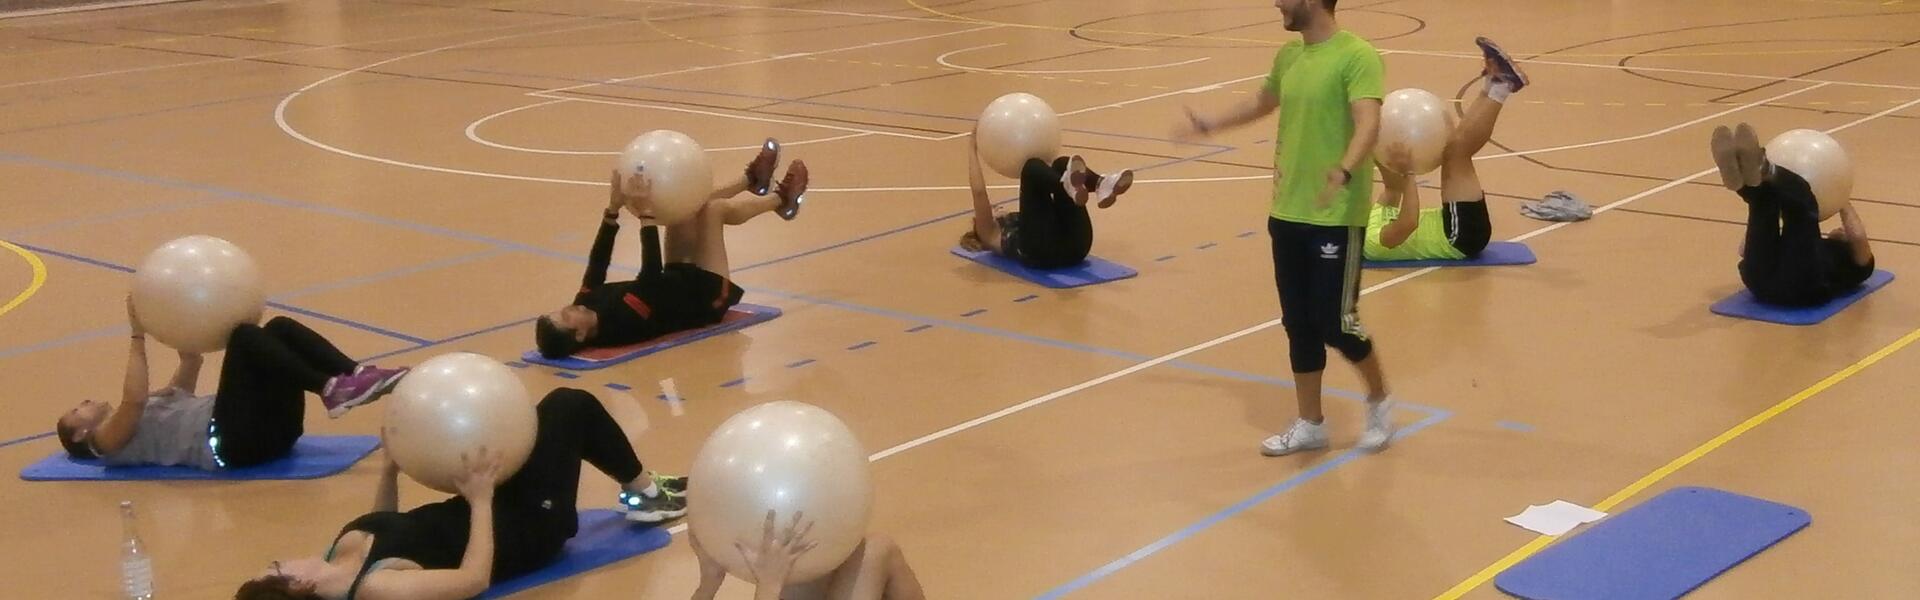 Personas practicando pilates en el pabellón deportivo universitario de Linares